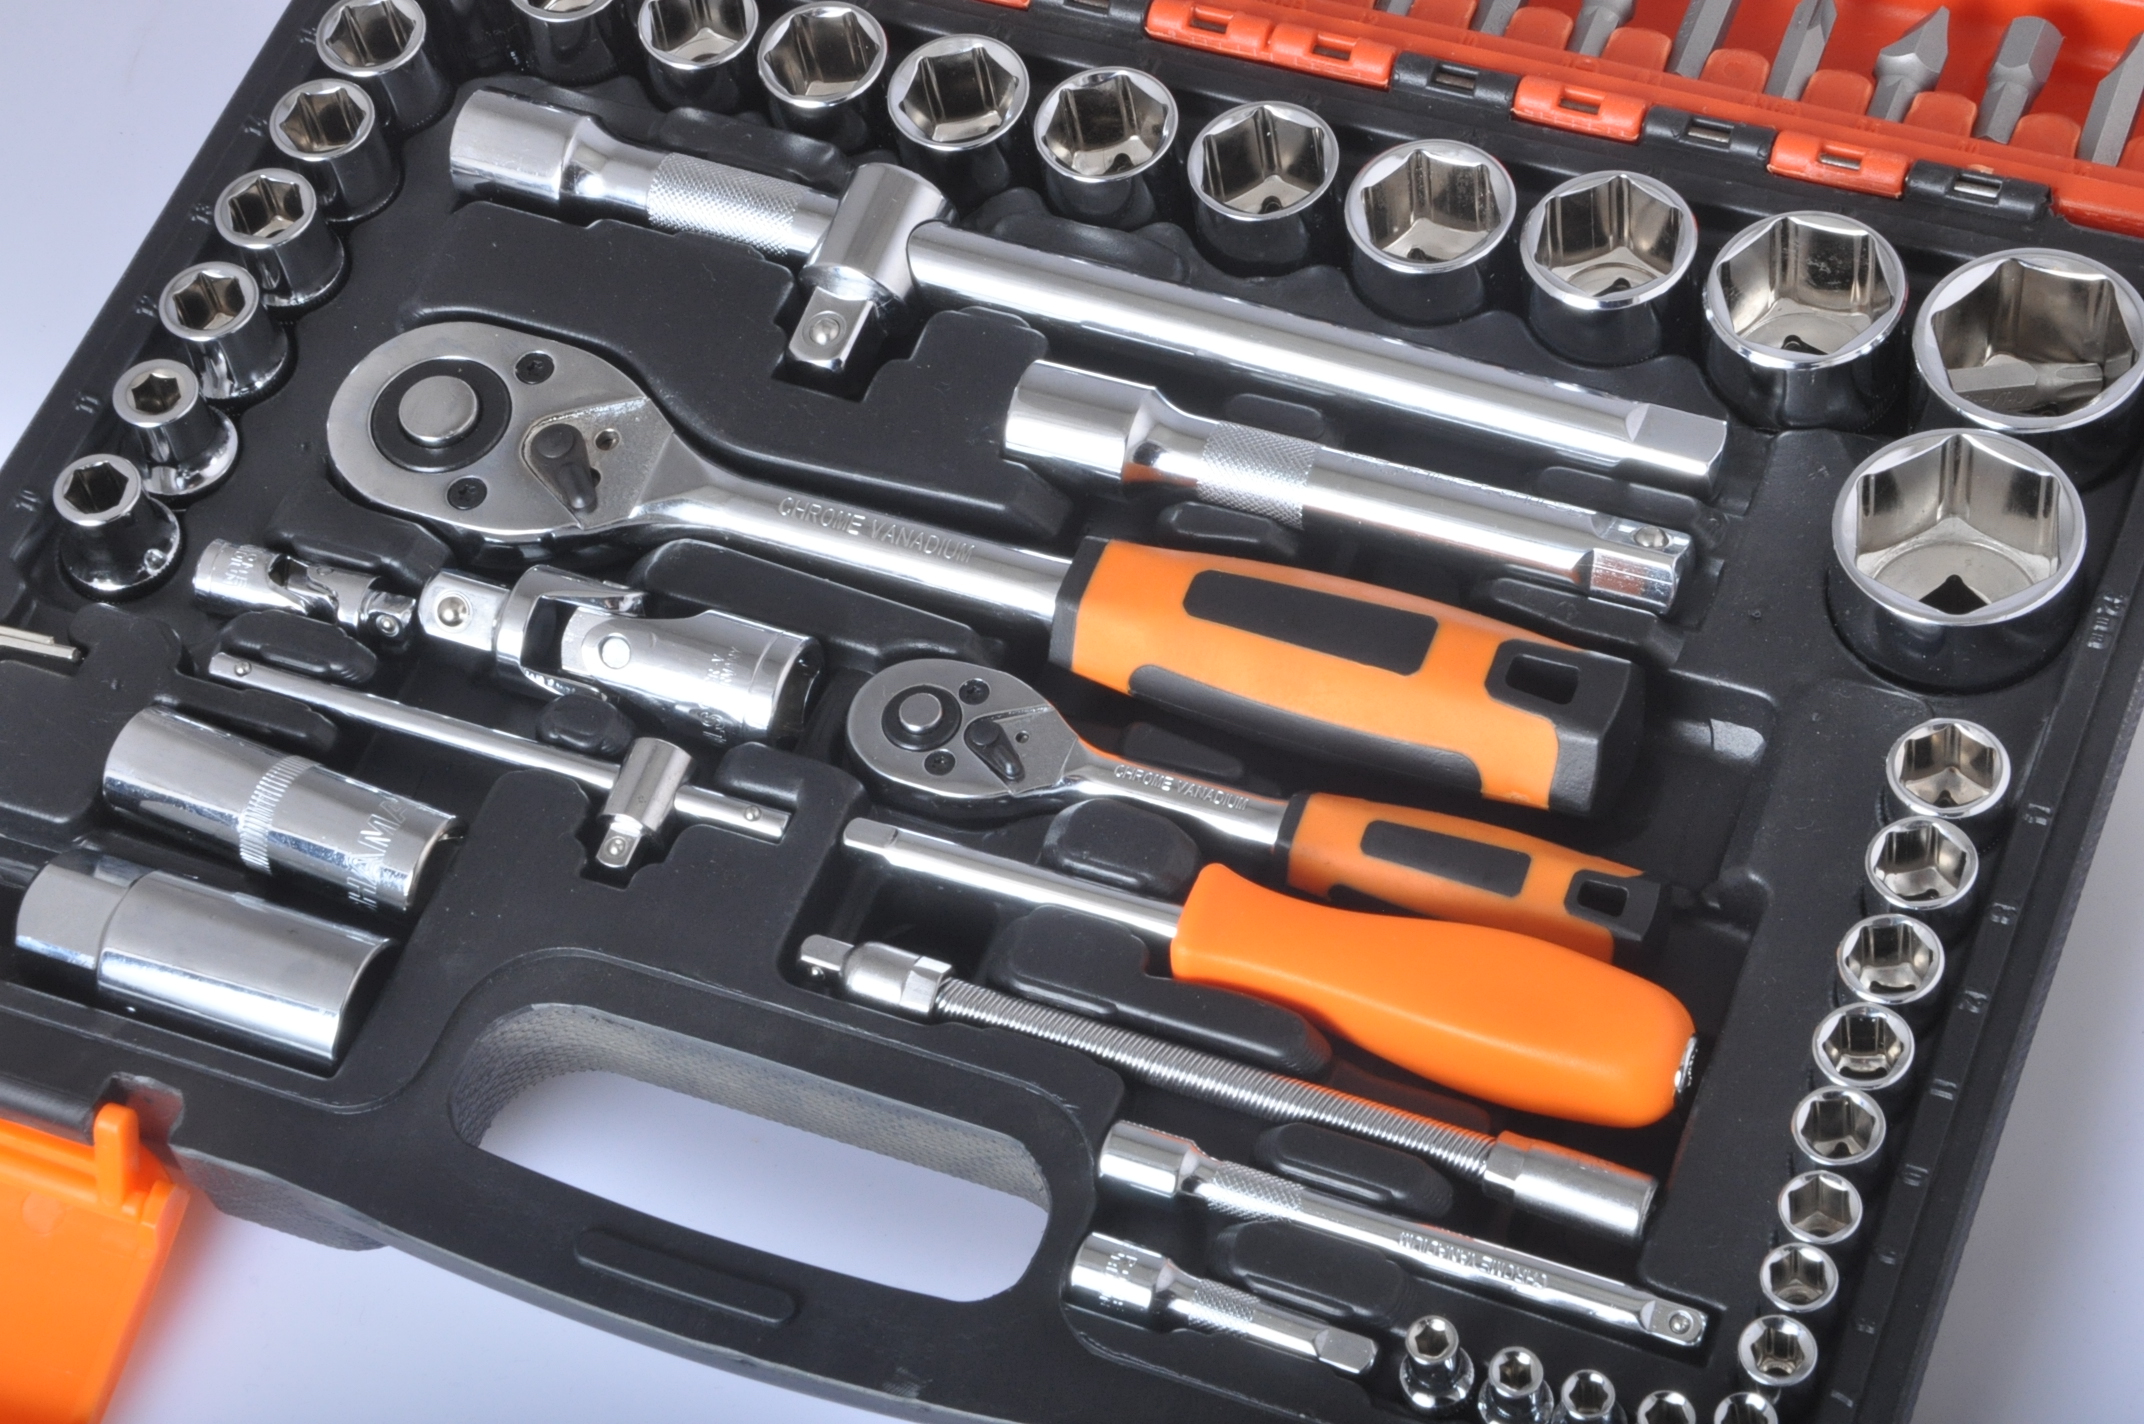 手动五金工具套装木工电动工具箱家用套装组合 修理工具礼品组套-阿里巴巴